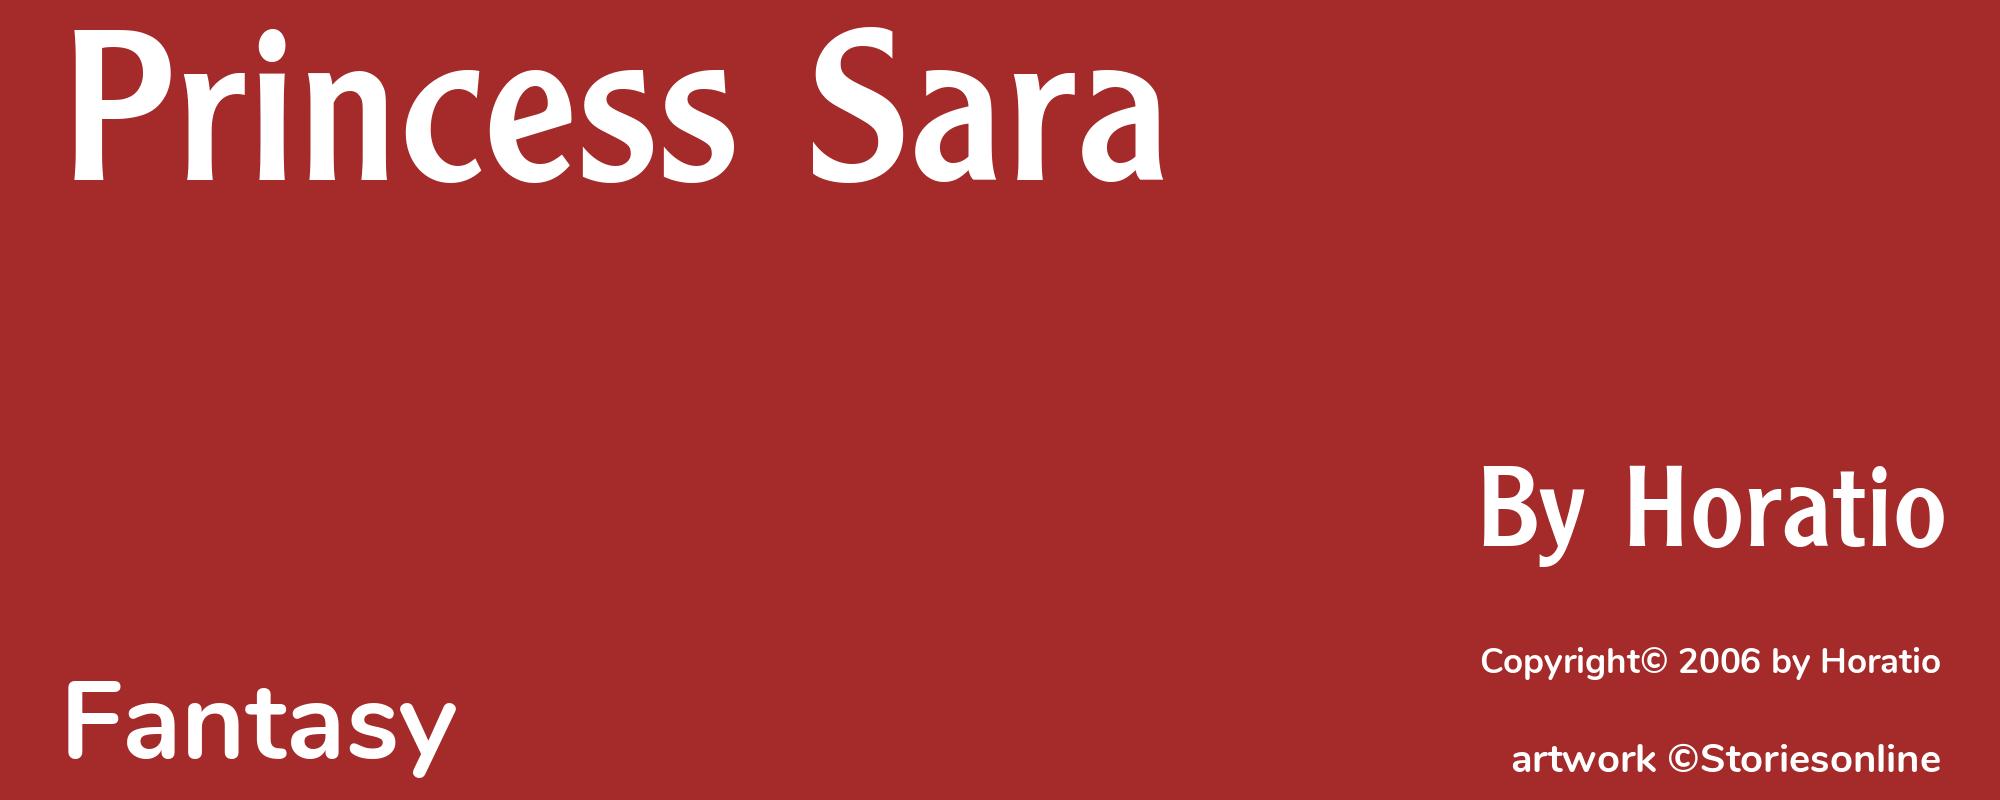 Princess Sara - Cover